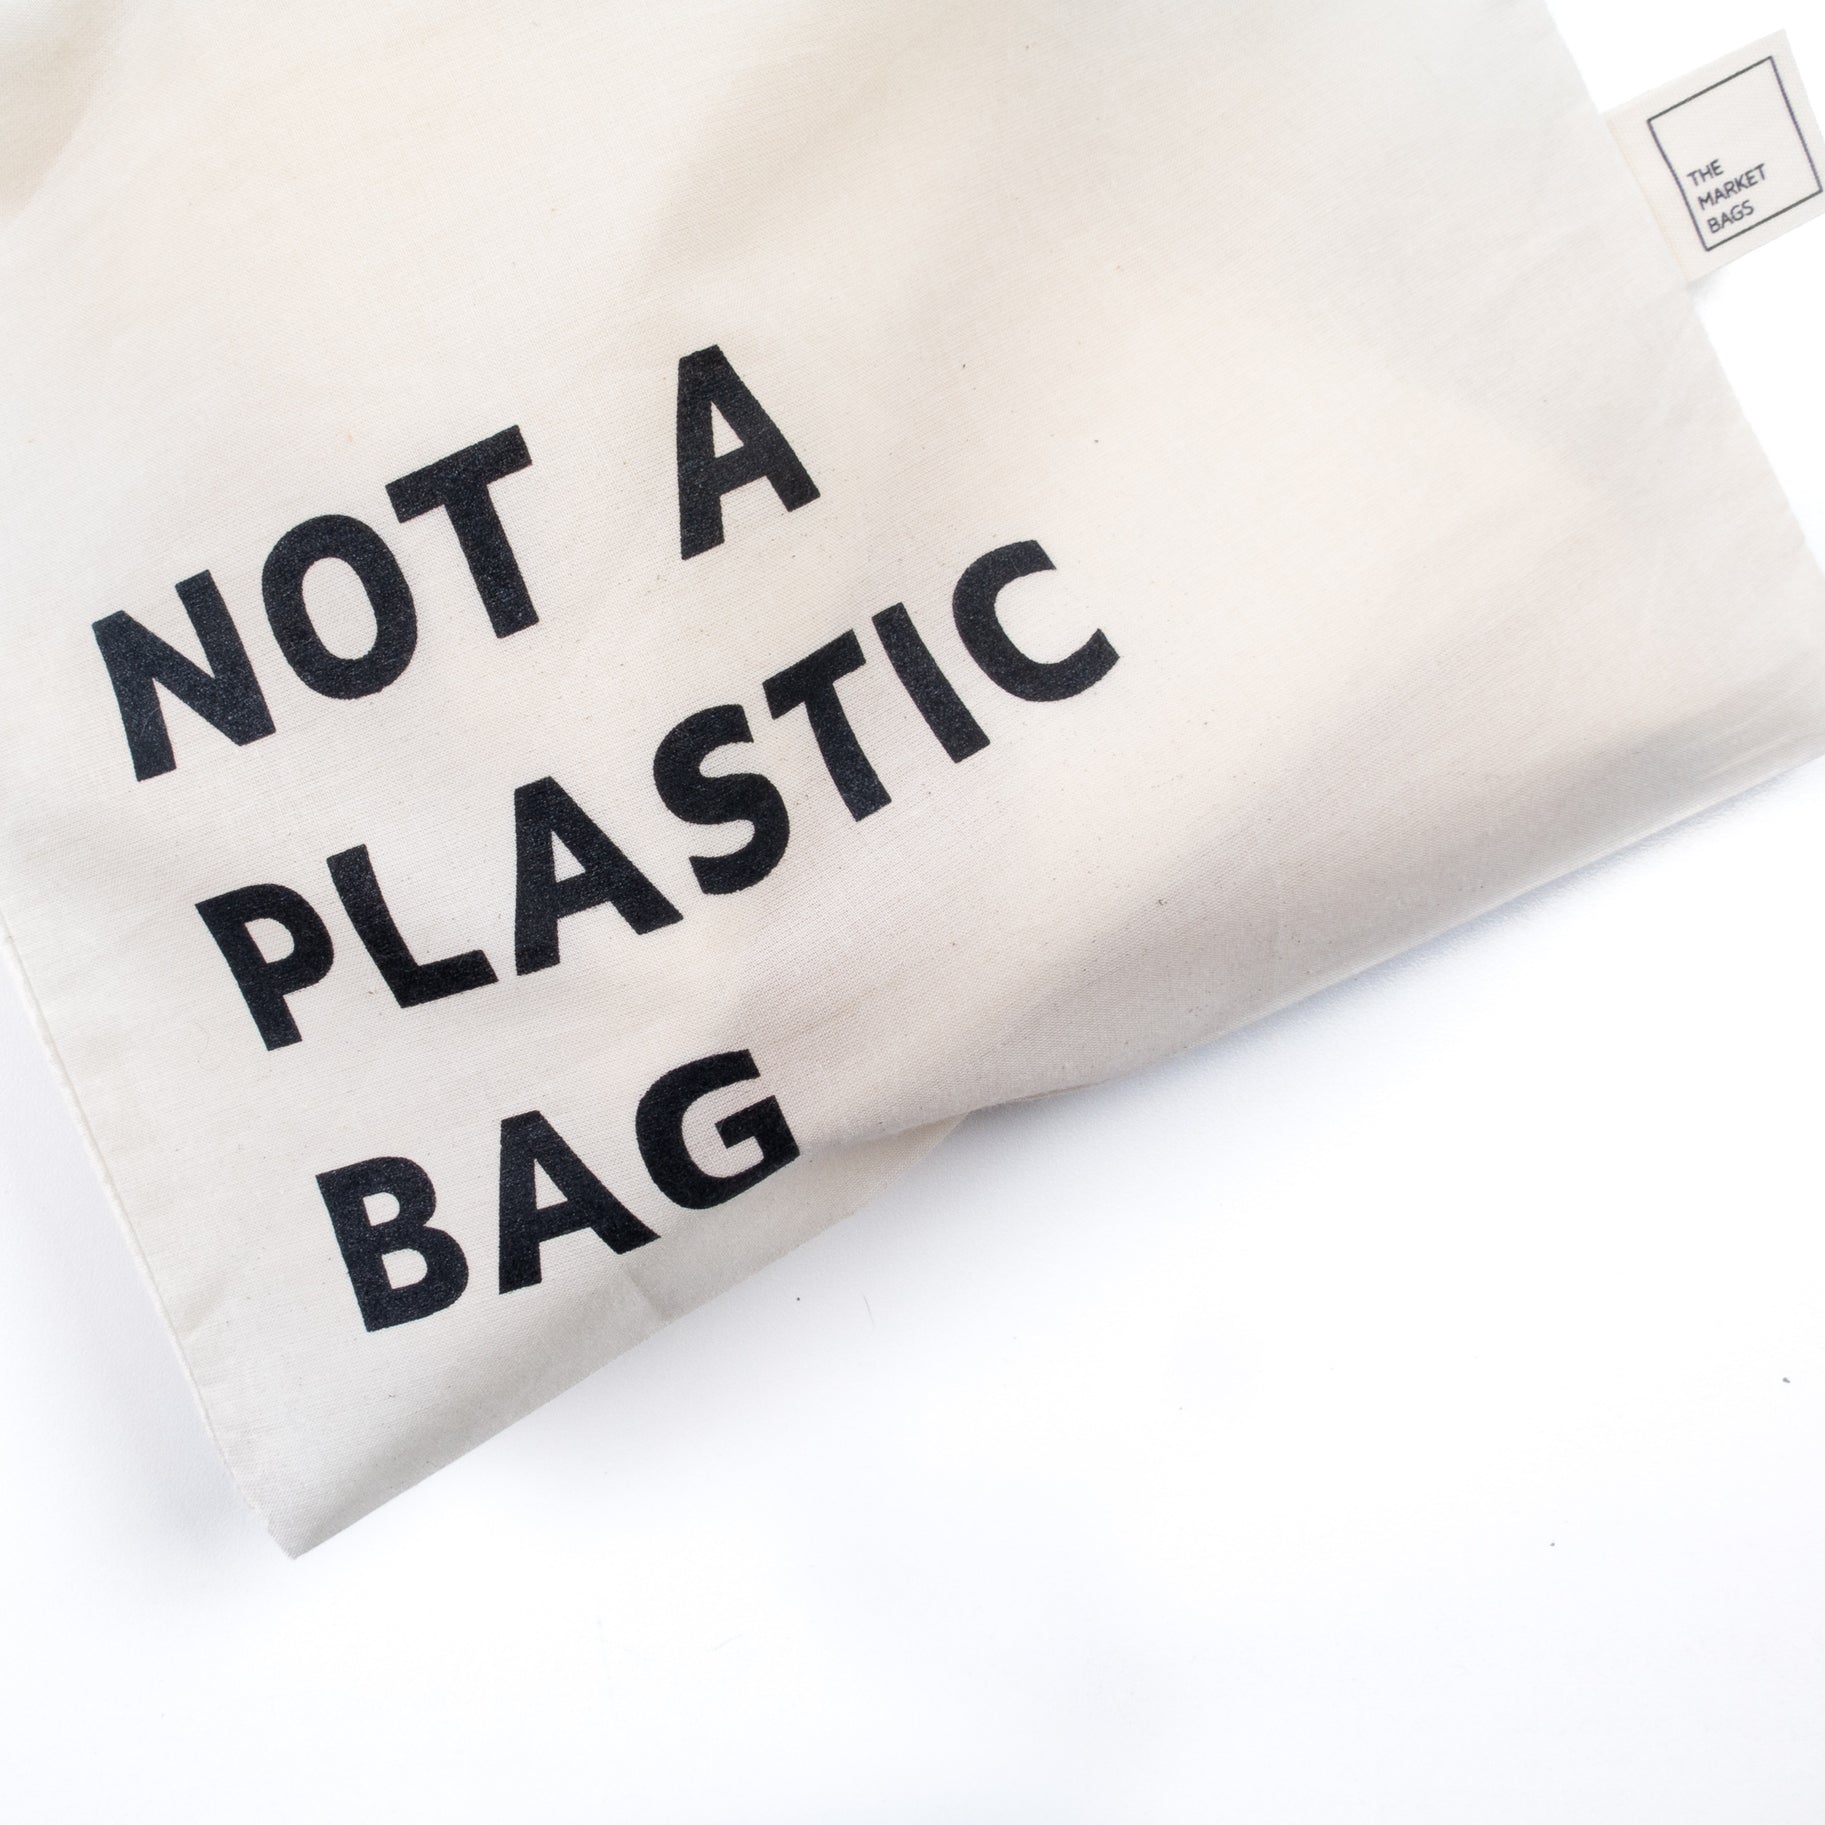 NOT A PLASTIC BAG